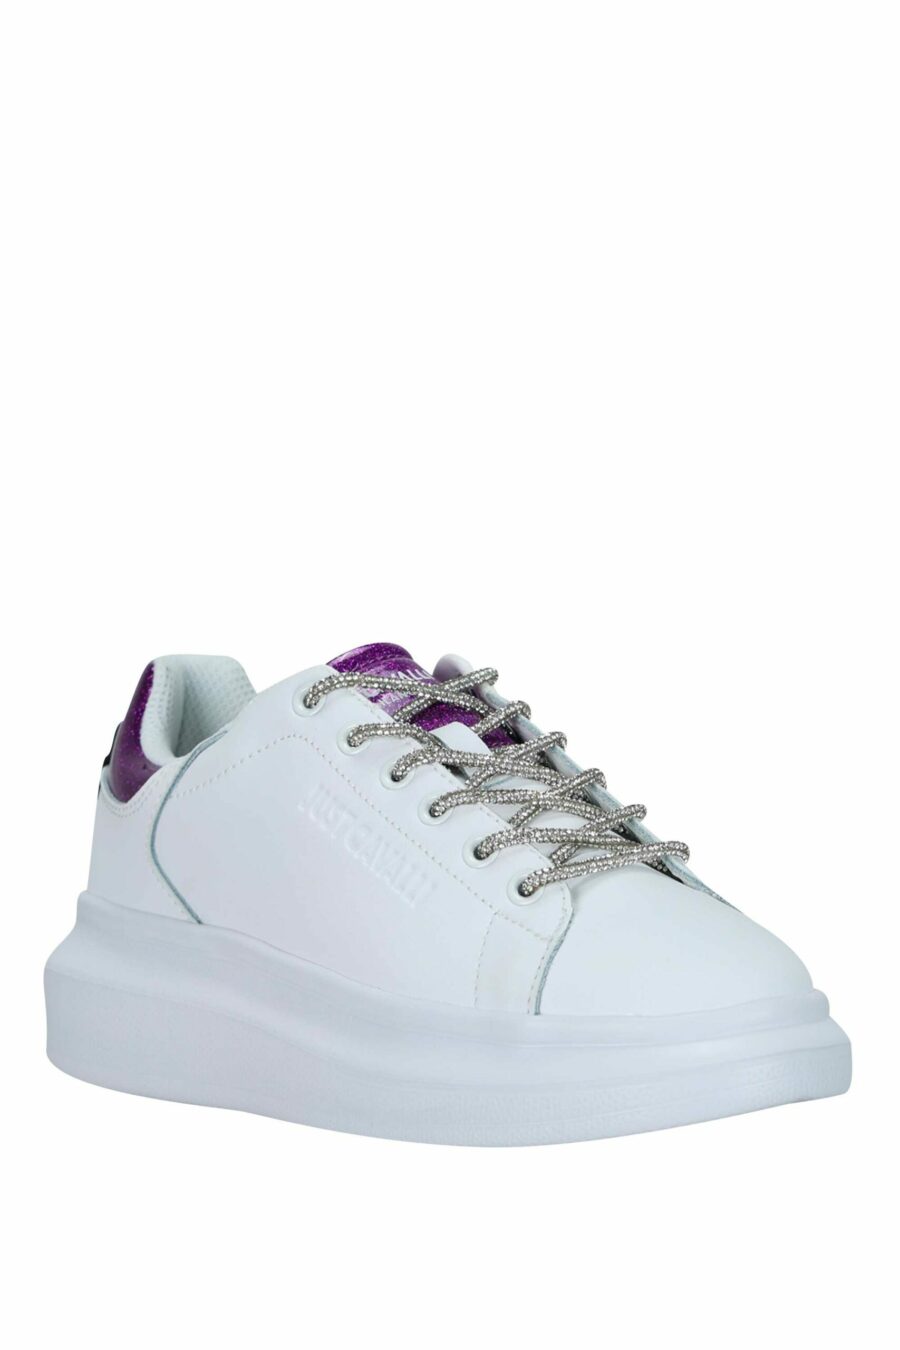 Zapatillas blancas con detalle plateado con purpurina y logo - 8052672731180 1 scaled